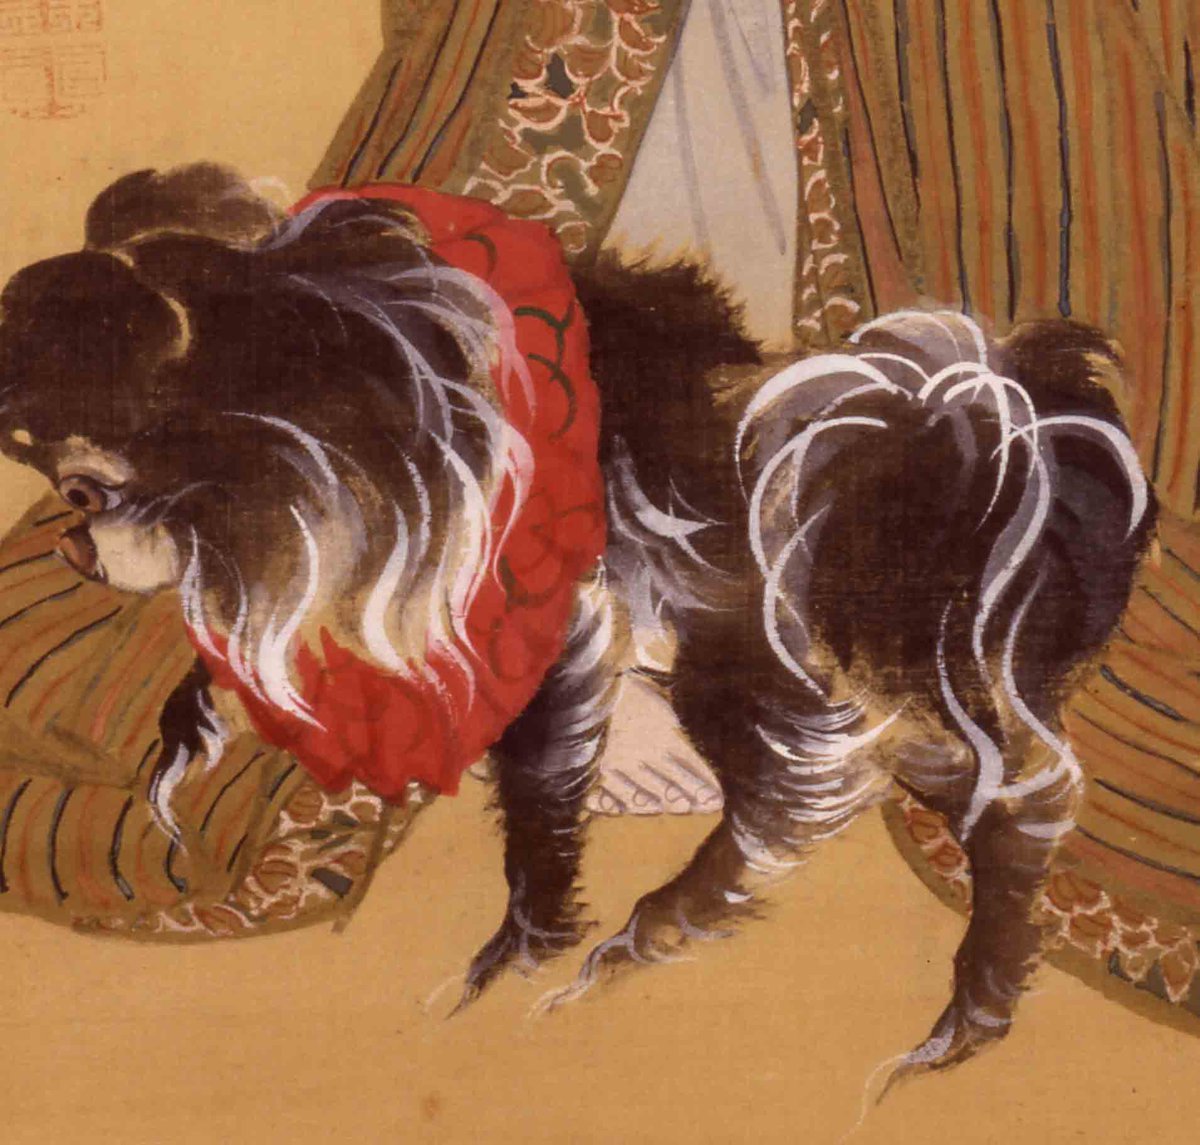 太田記念美術館 Ota Memorial Museum Of Art 浮世絵の犬 江戸の犬 小型犬 は 裕福な女性たちのペットとして大事にされたようで 美人画には足元でじゃれる犬が時折登場します ふさふさの毛や 左の犬の上目づかいがキュート 現在展示していません